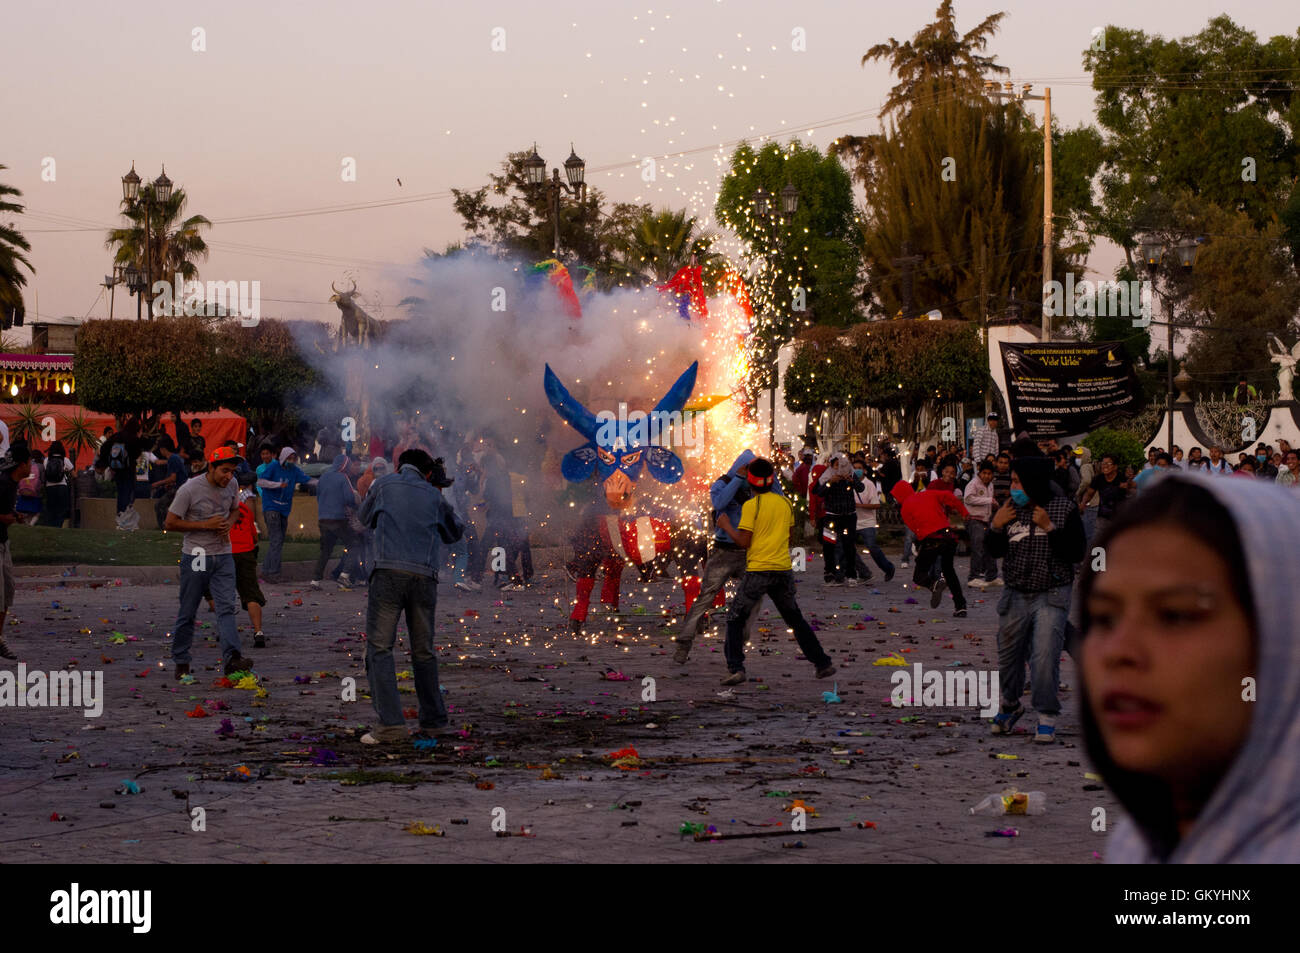 Quema de Toritos (pyrotechnic bulls) during the National Pyrotechnic Festival in Tultepec, Estado de Mexico Stock Photo